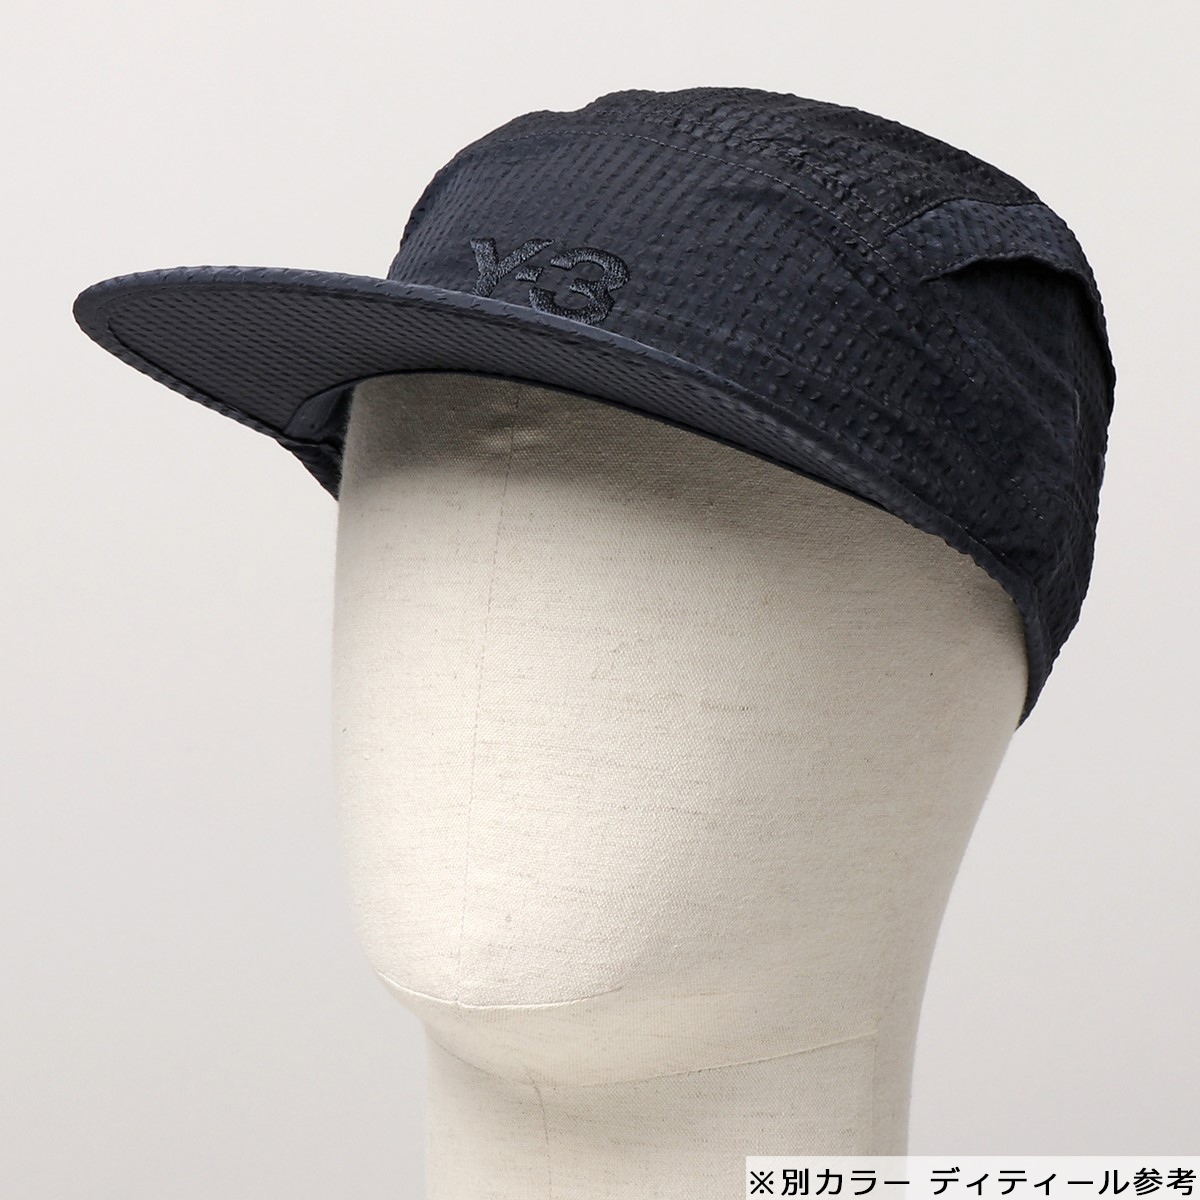 Y-3 ワイスリー adidas アディダス YOHJI YAMAMOTO GT6387 CH2 VENTILATION CAP キャップ 帽子 ロゴ  メッシュ BLACK メンズ | インポートセレクト musee